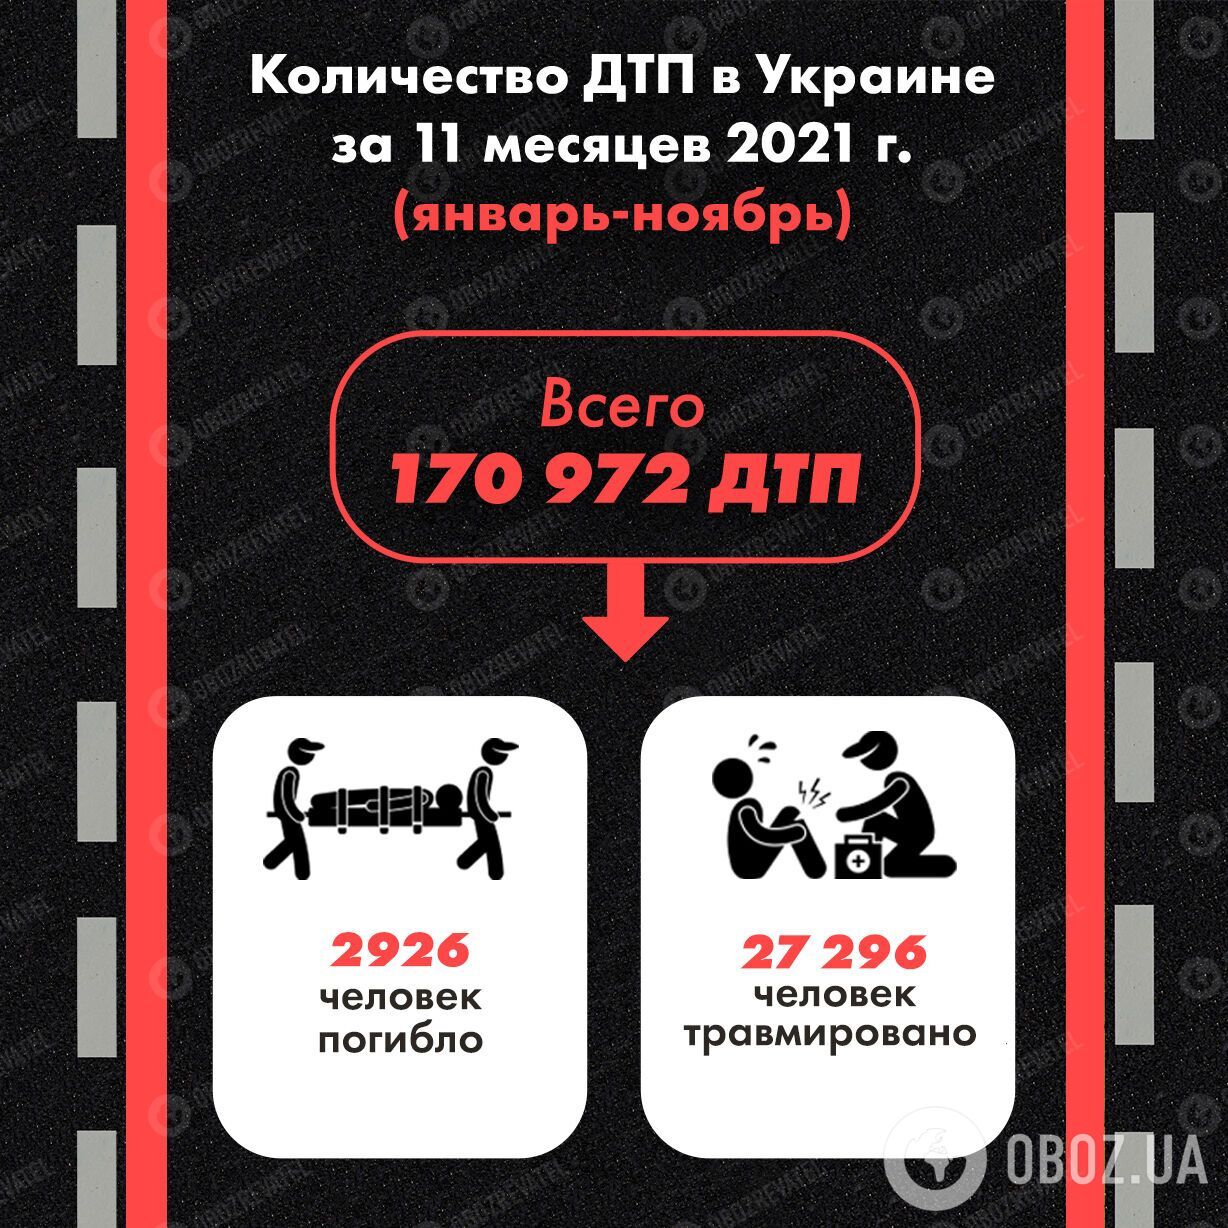 Количество ДТП в Украине за одиннадцать месяцев 2021 года.